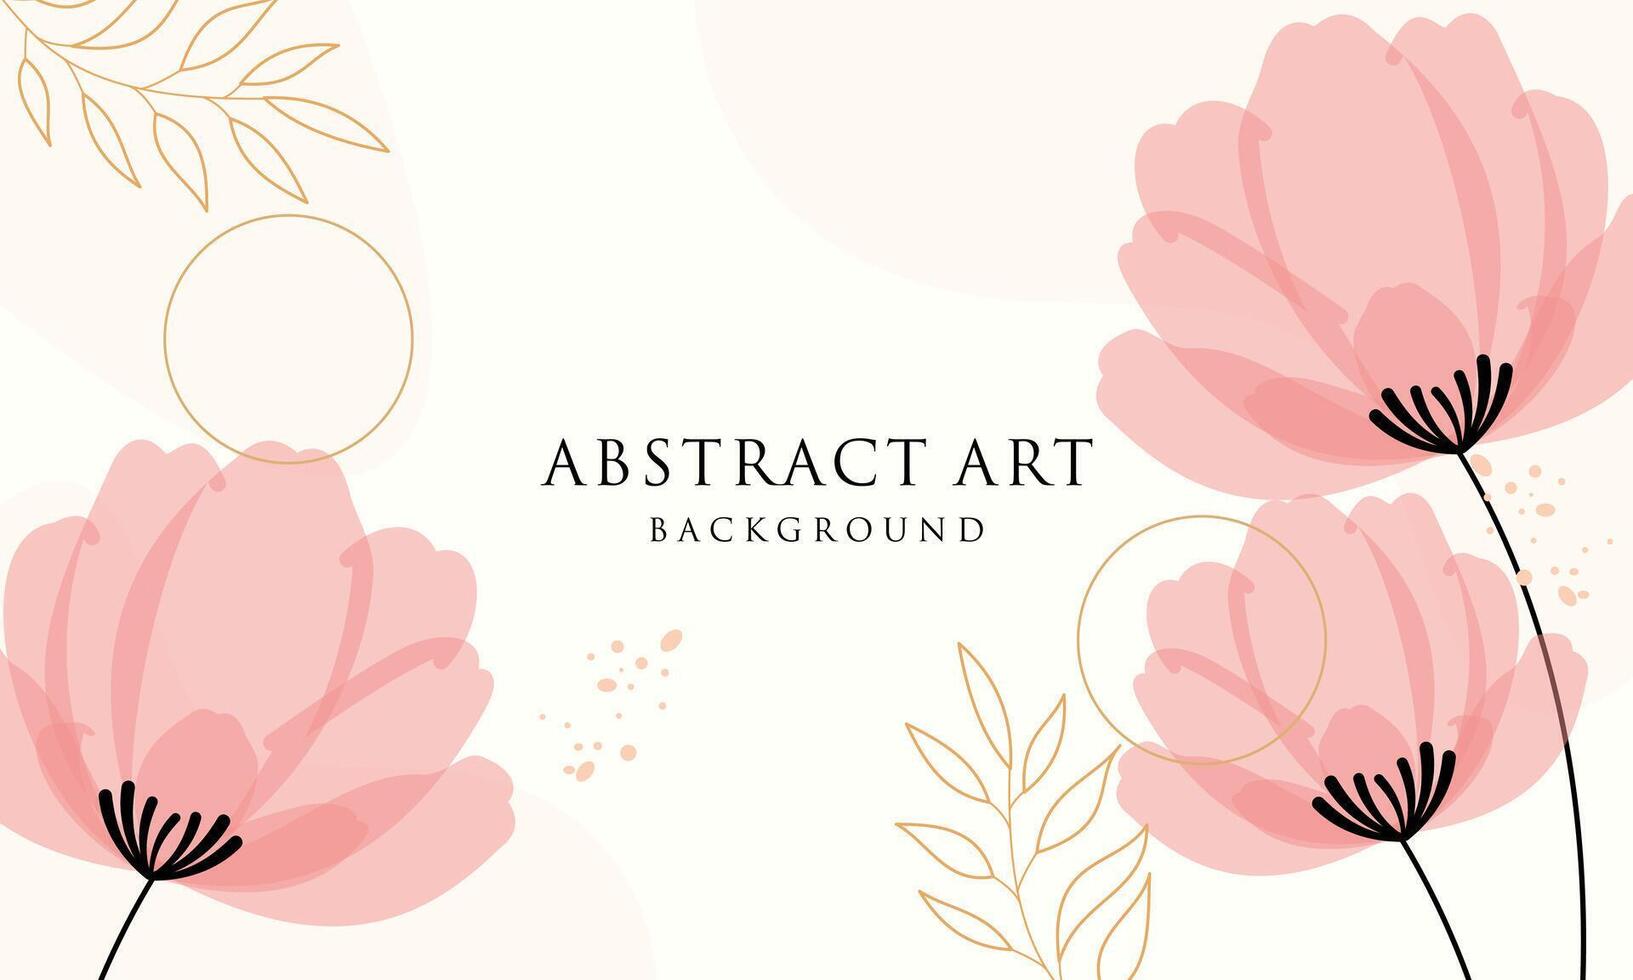 abstract kunst achtergrond . lijn kunst bloem en botanisch bladeren vector